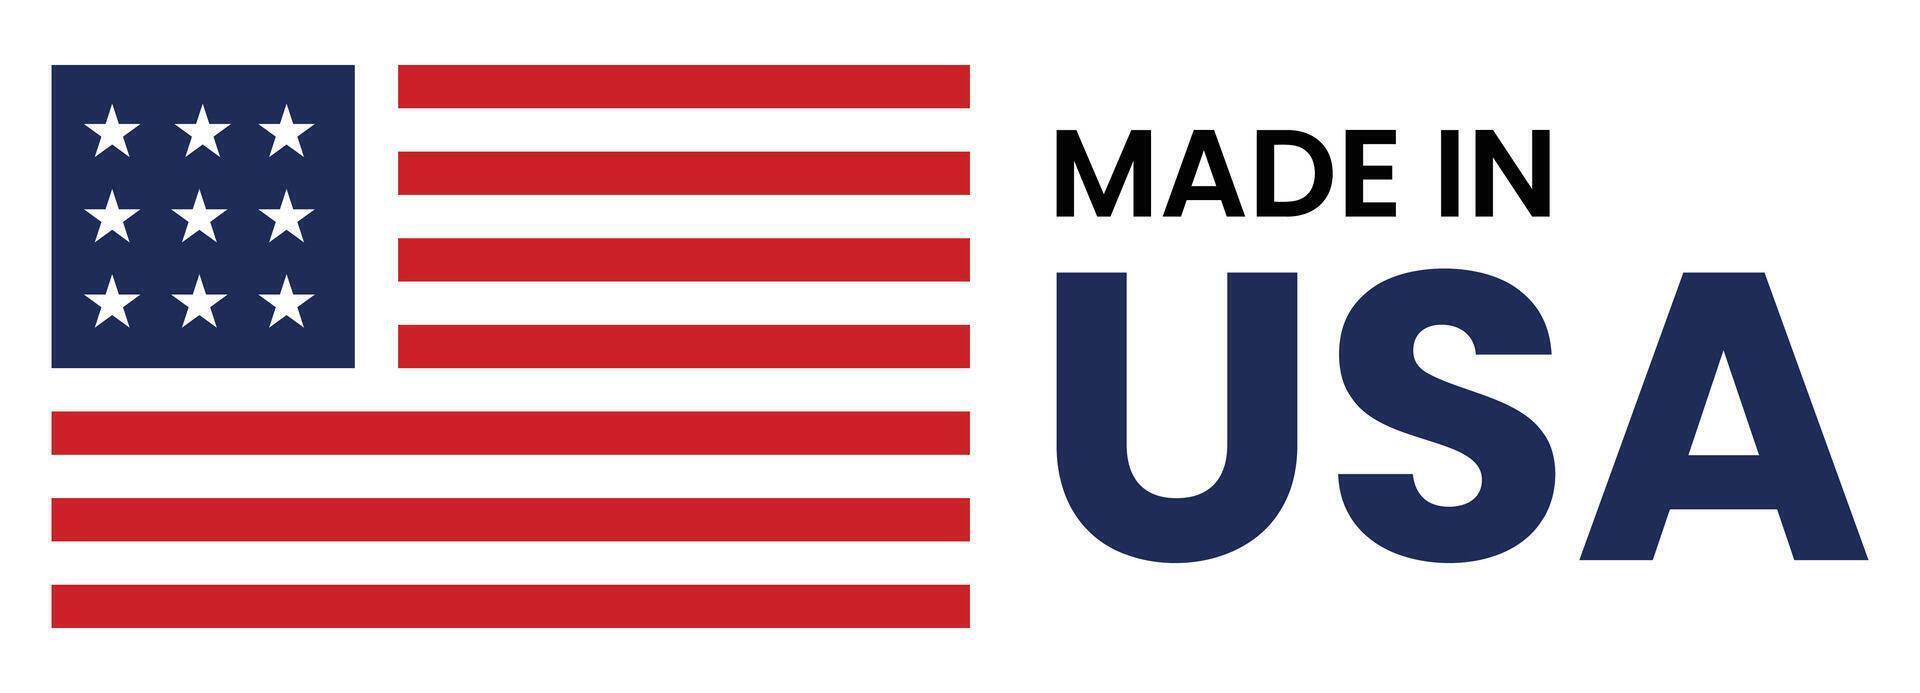 tillverkad i USA baner - amerikan flagga färger design vektor